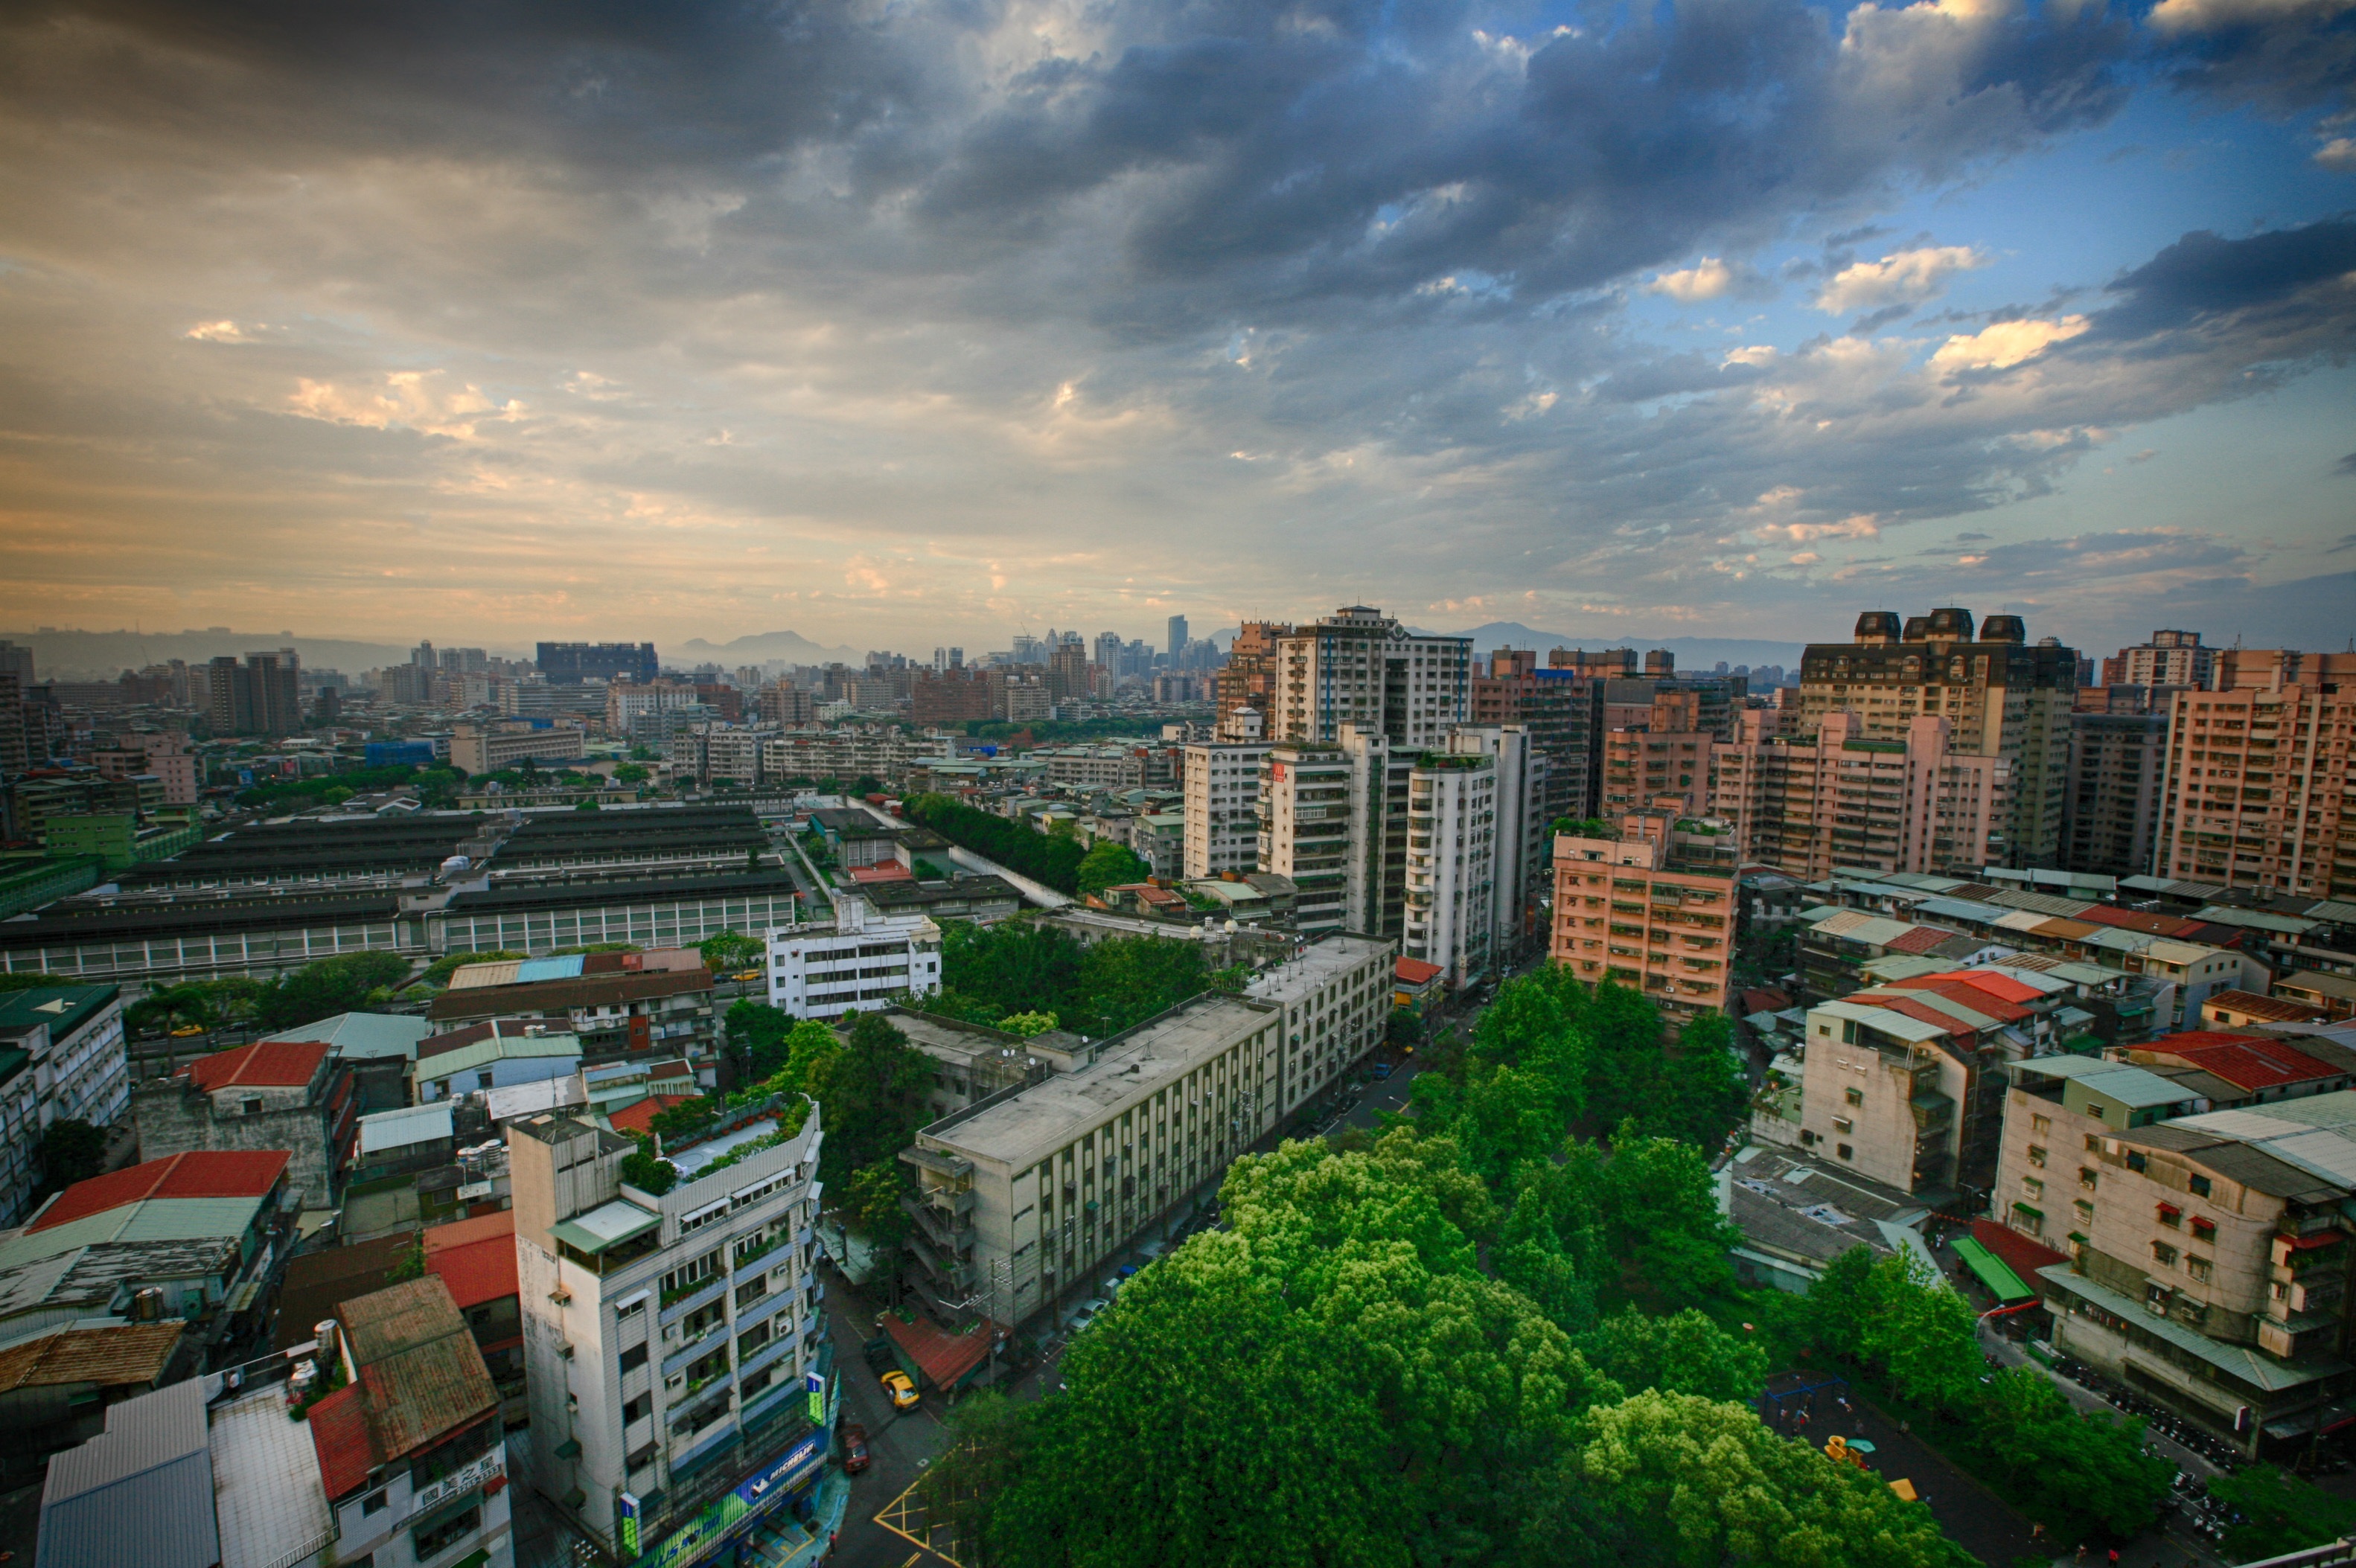 Taipei Urban Cityscape View image - Free stock photo - Public Domain ...